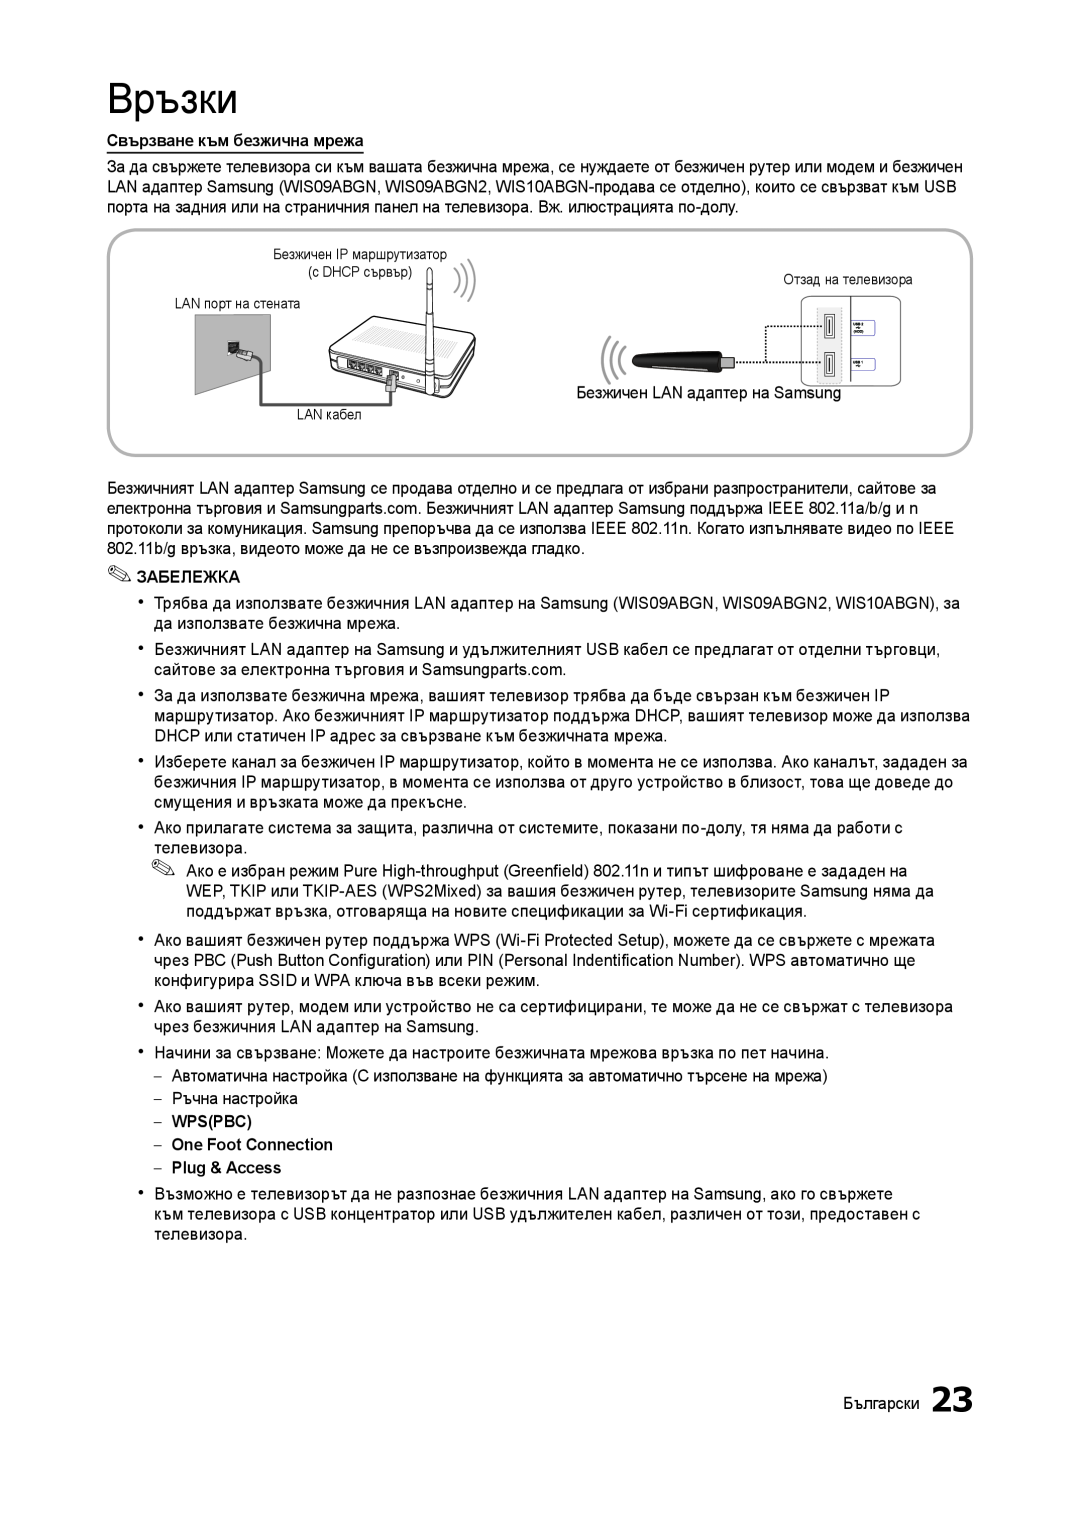 Samsung LT27B750EW/EN manual Връзки, Свързване към безжична мрежа, Забележка, WPSPBC One Foot Connection Plug & Access 